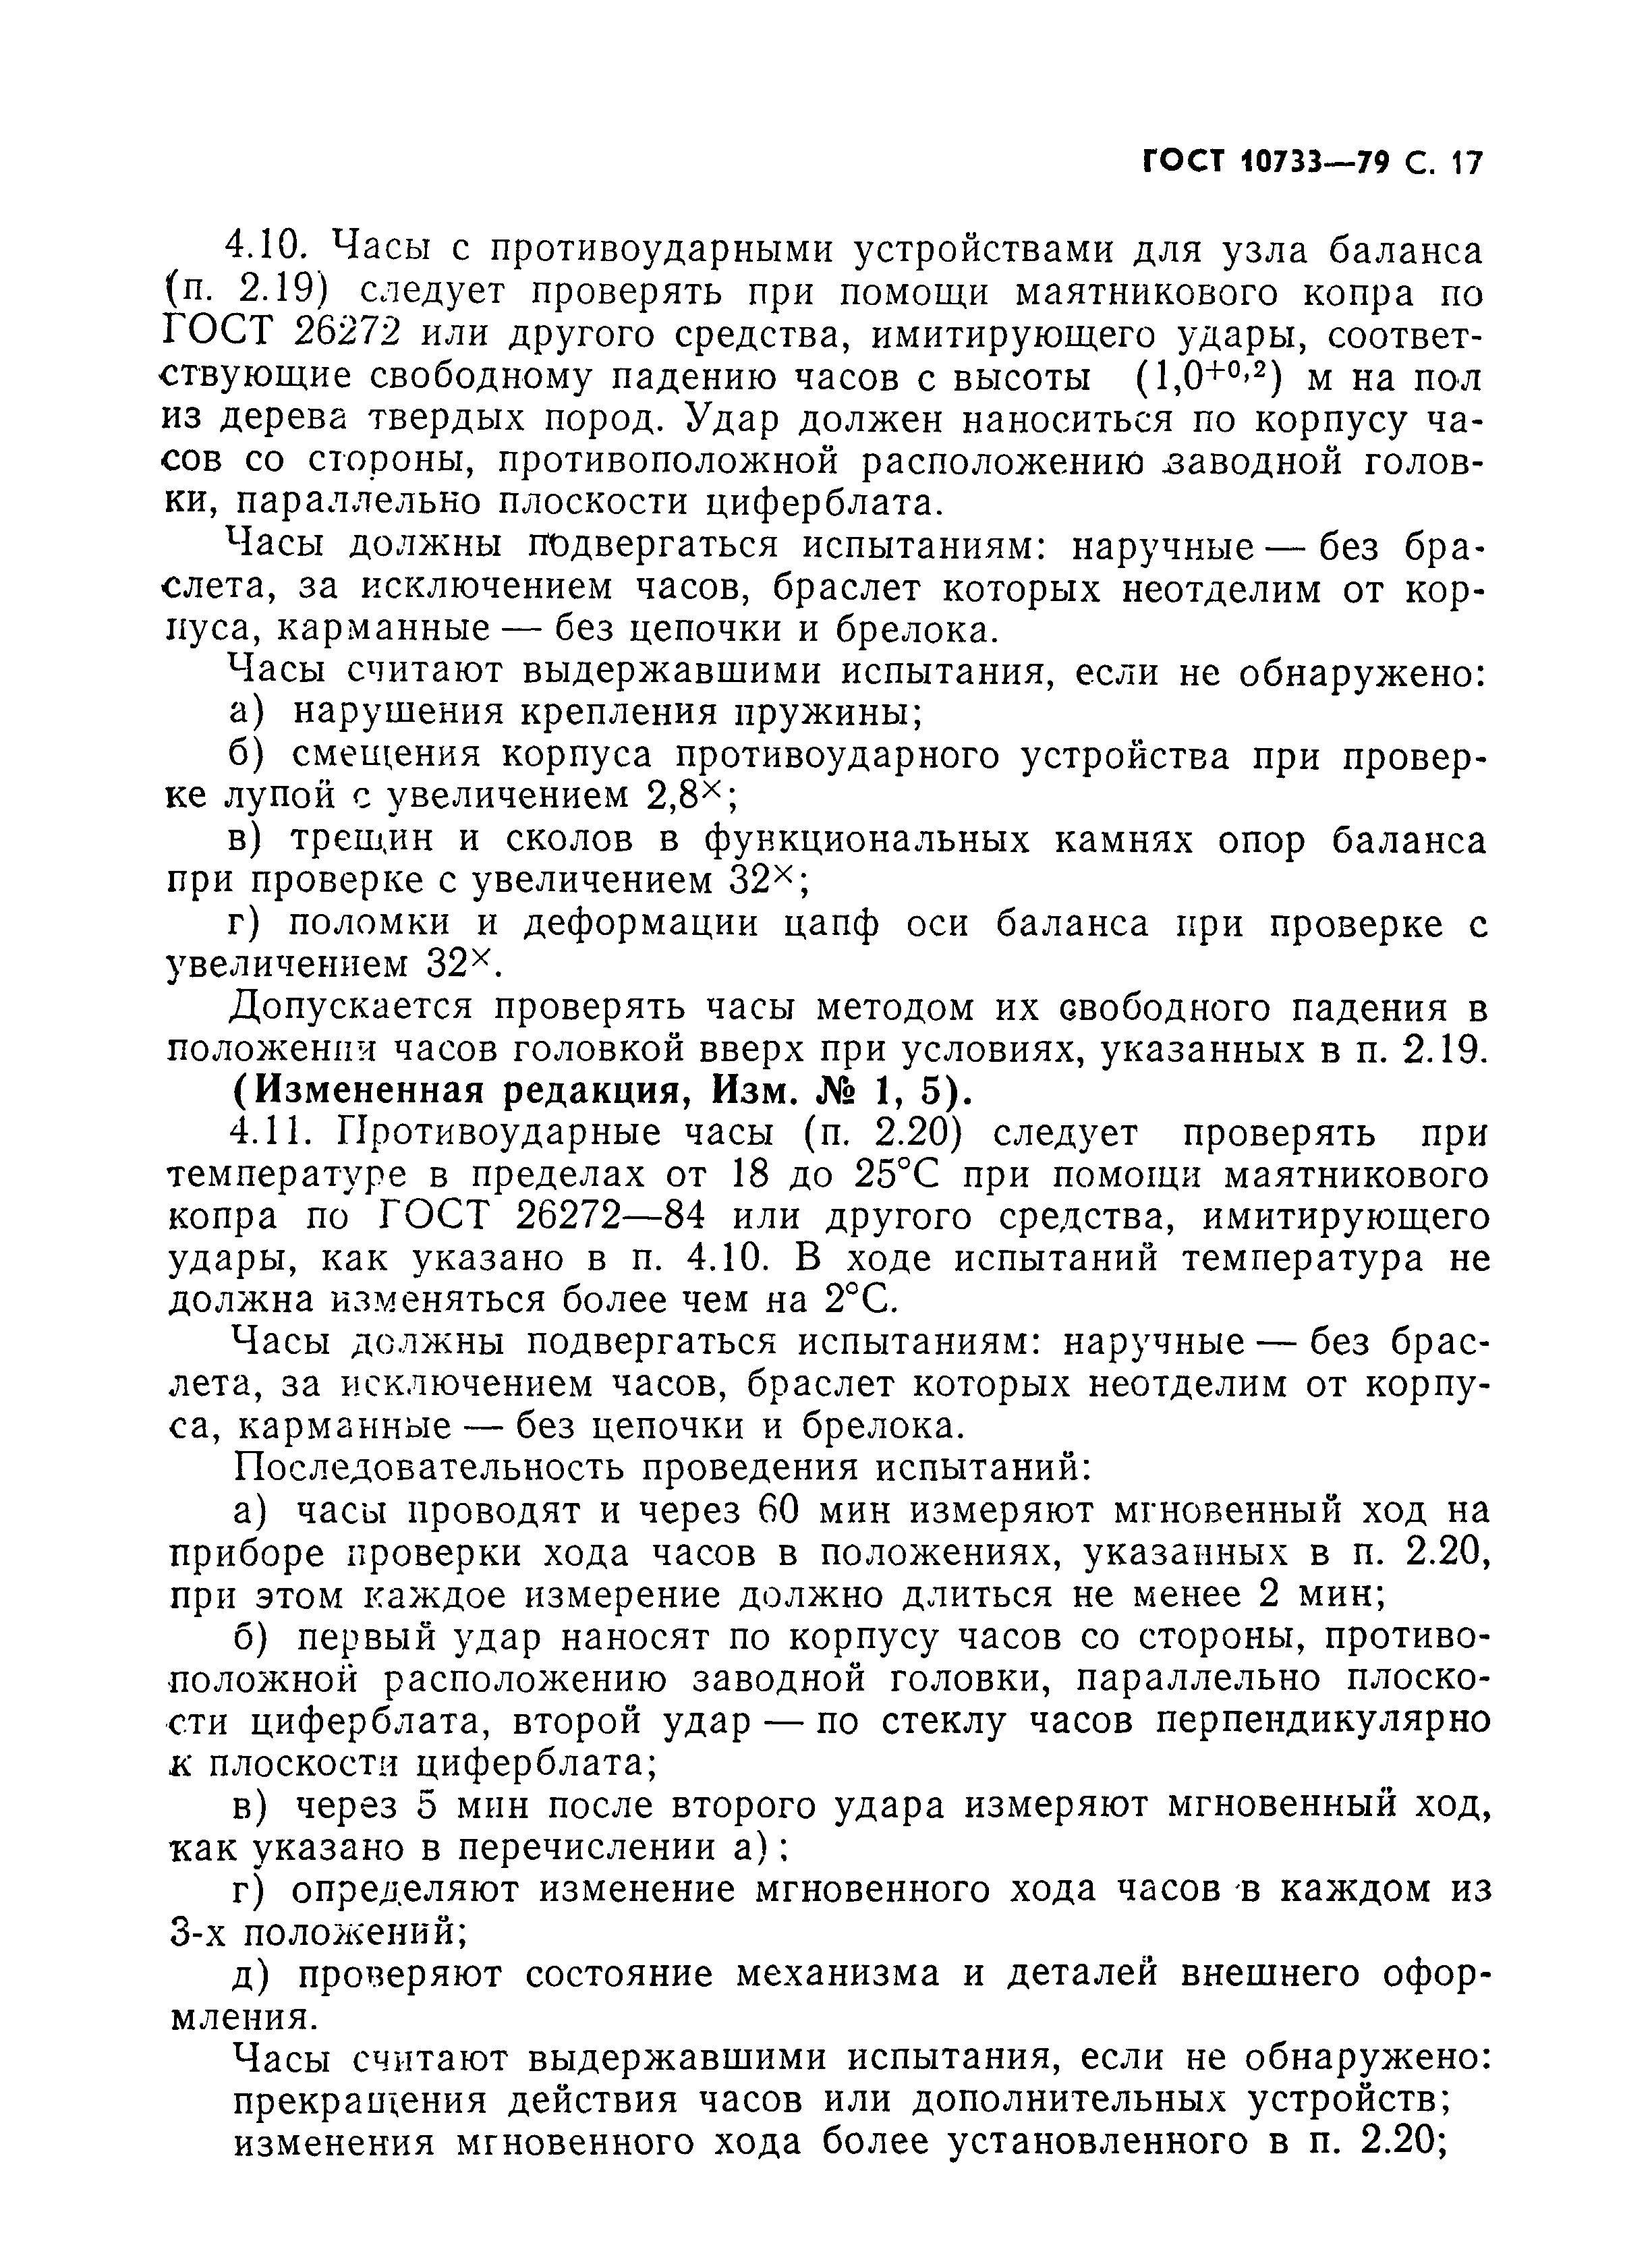 ГОСТ 10733-79, страница 18.